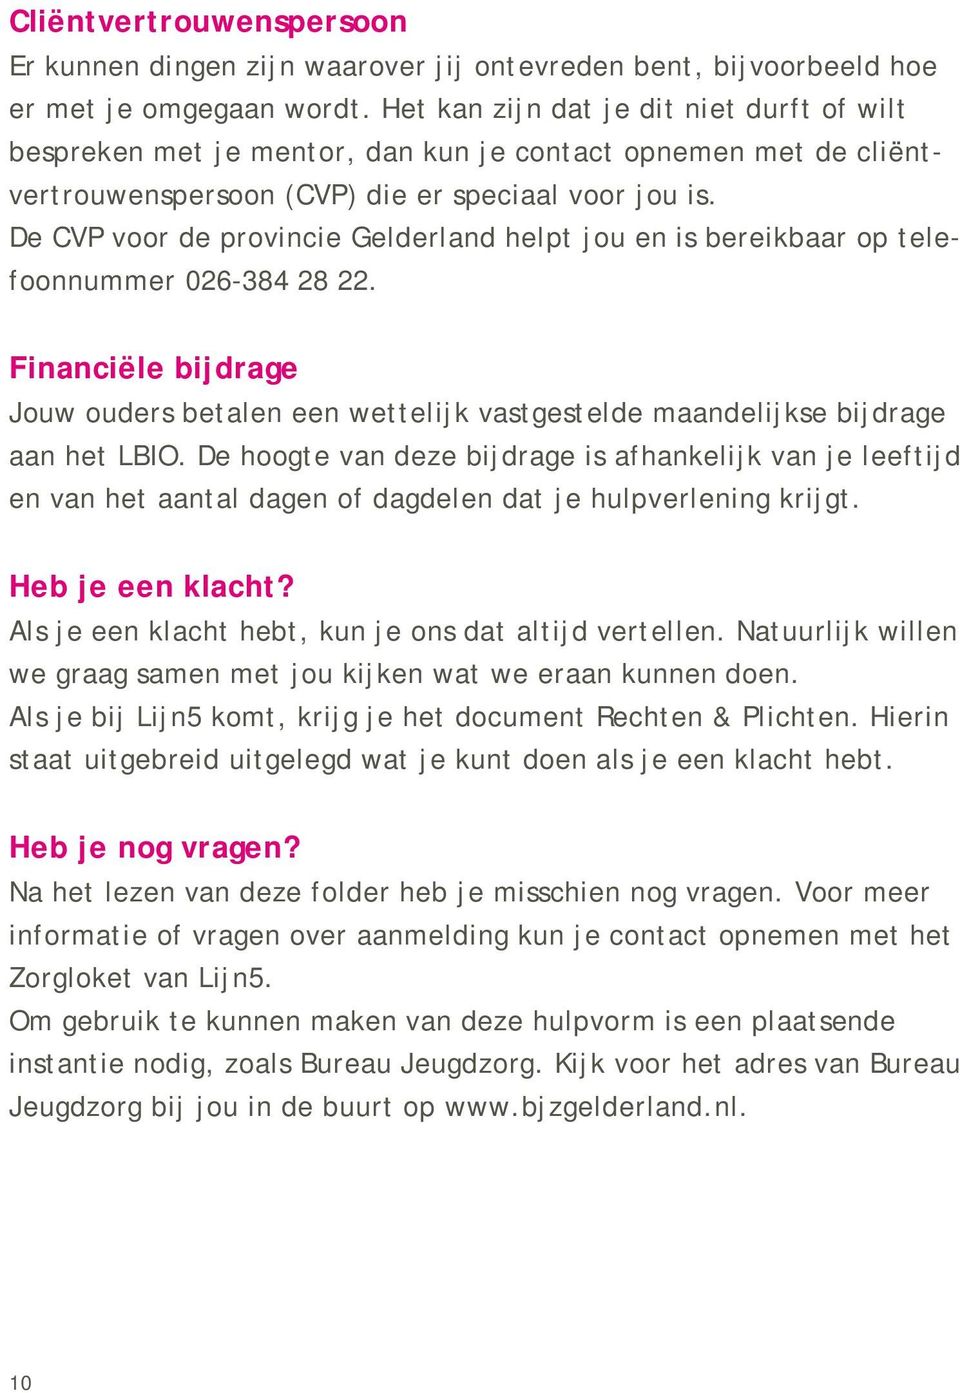 De CVP voor de provincie Gelderland helpt jou en is bereikbaar op telefoonnummer 026-384 28 22. Financiële bijdrage Jouw ouders betalen een wettelijk vastgestelde maandelijkse bijdrage aan het LBIO.